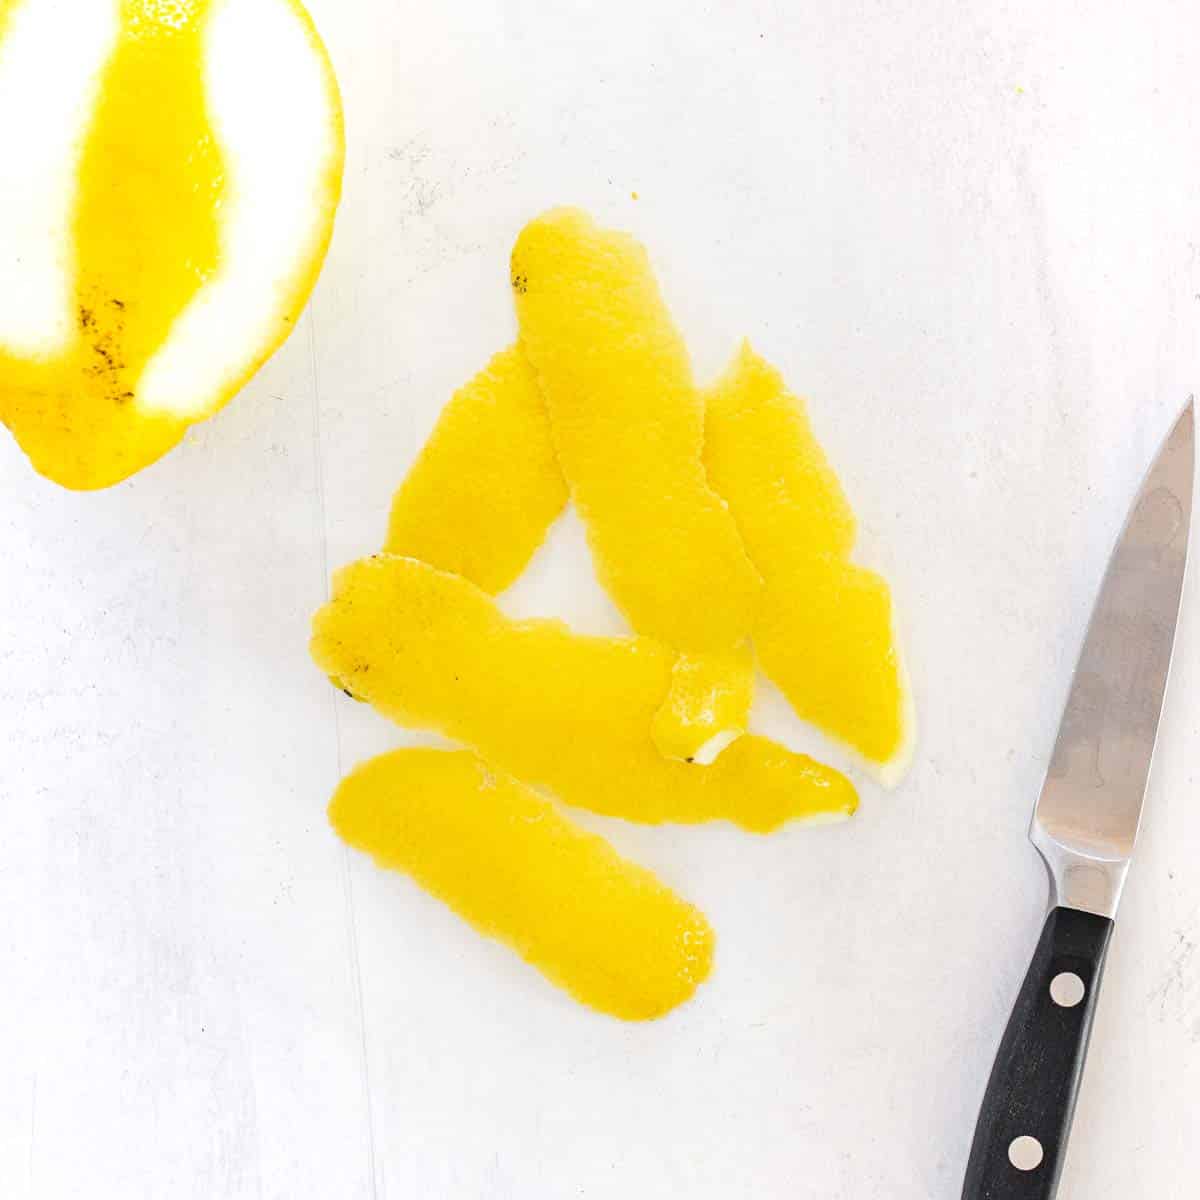 peeling the lemon